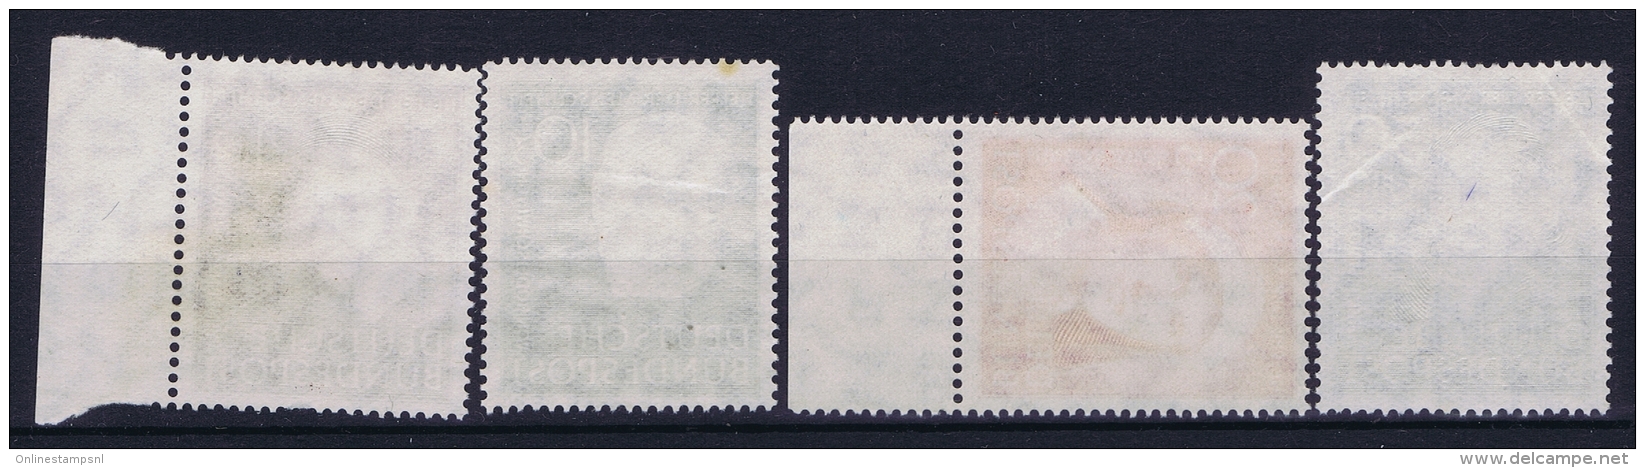 Bundespost: Mi Nr 143 - 146 Not Used (*) SG 1951 - Nuovi